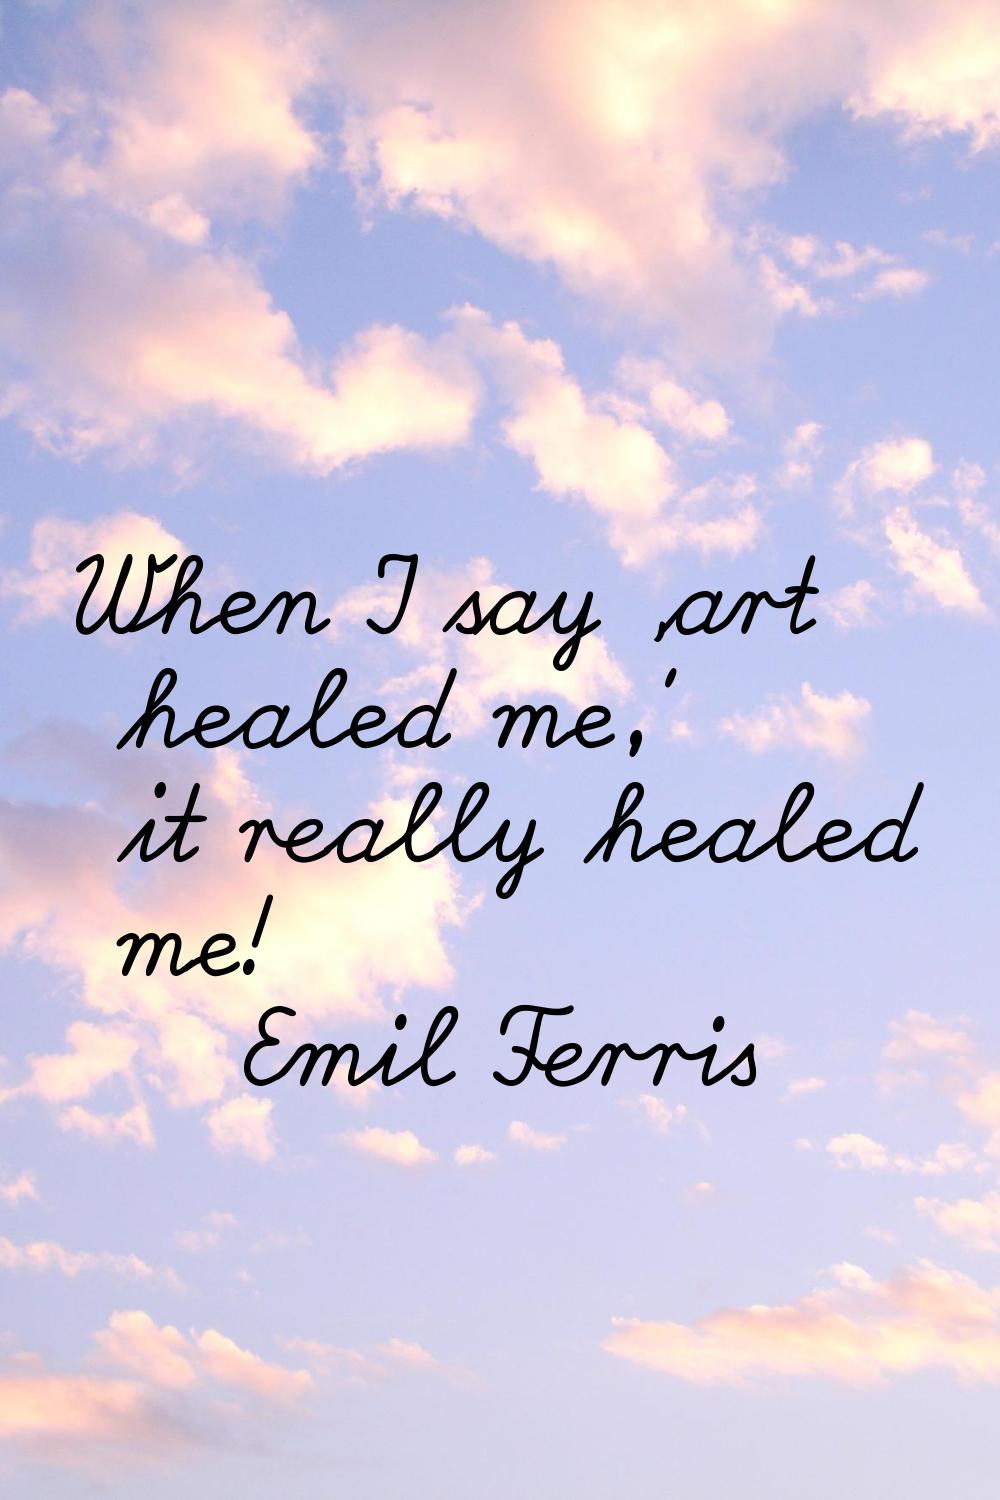 When I say 'art healed me,' it really healed me!